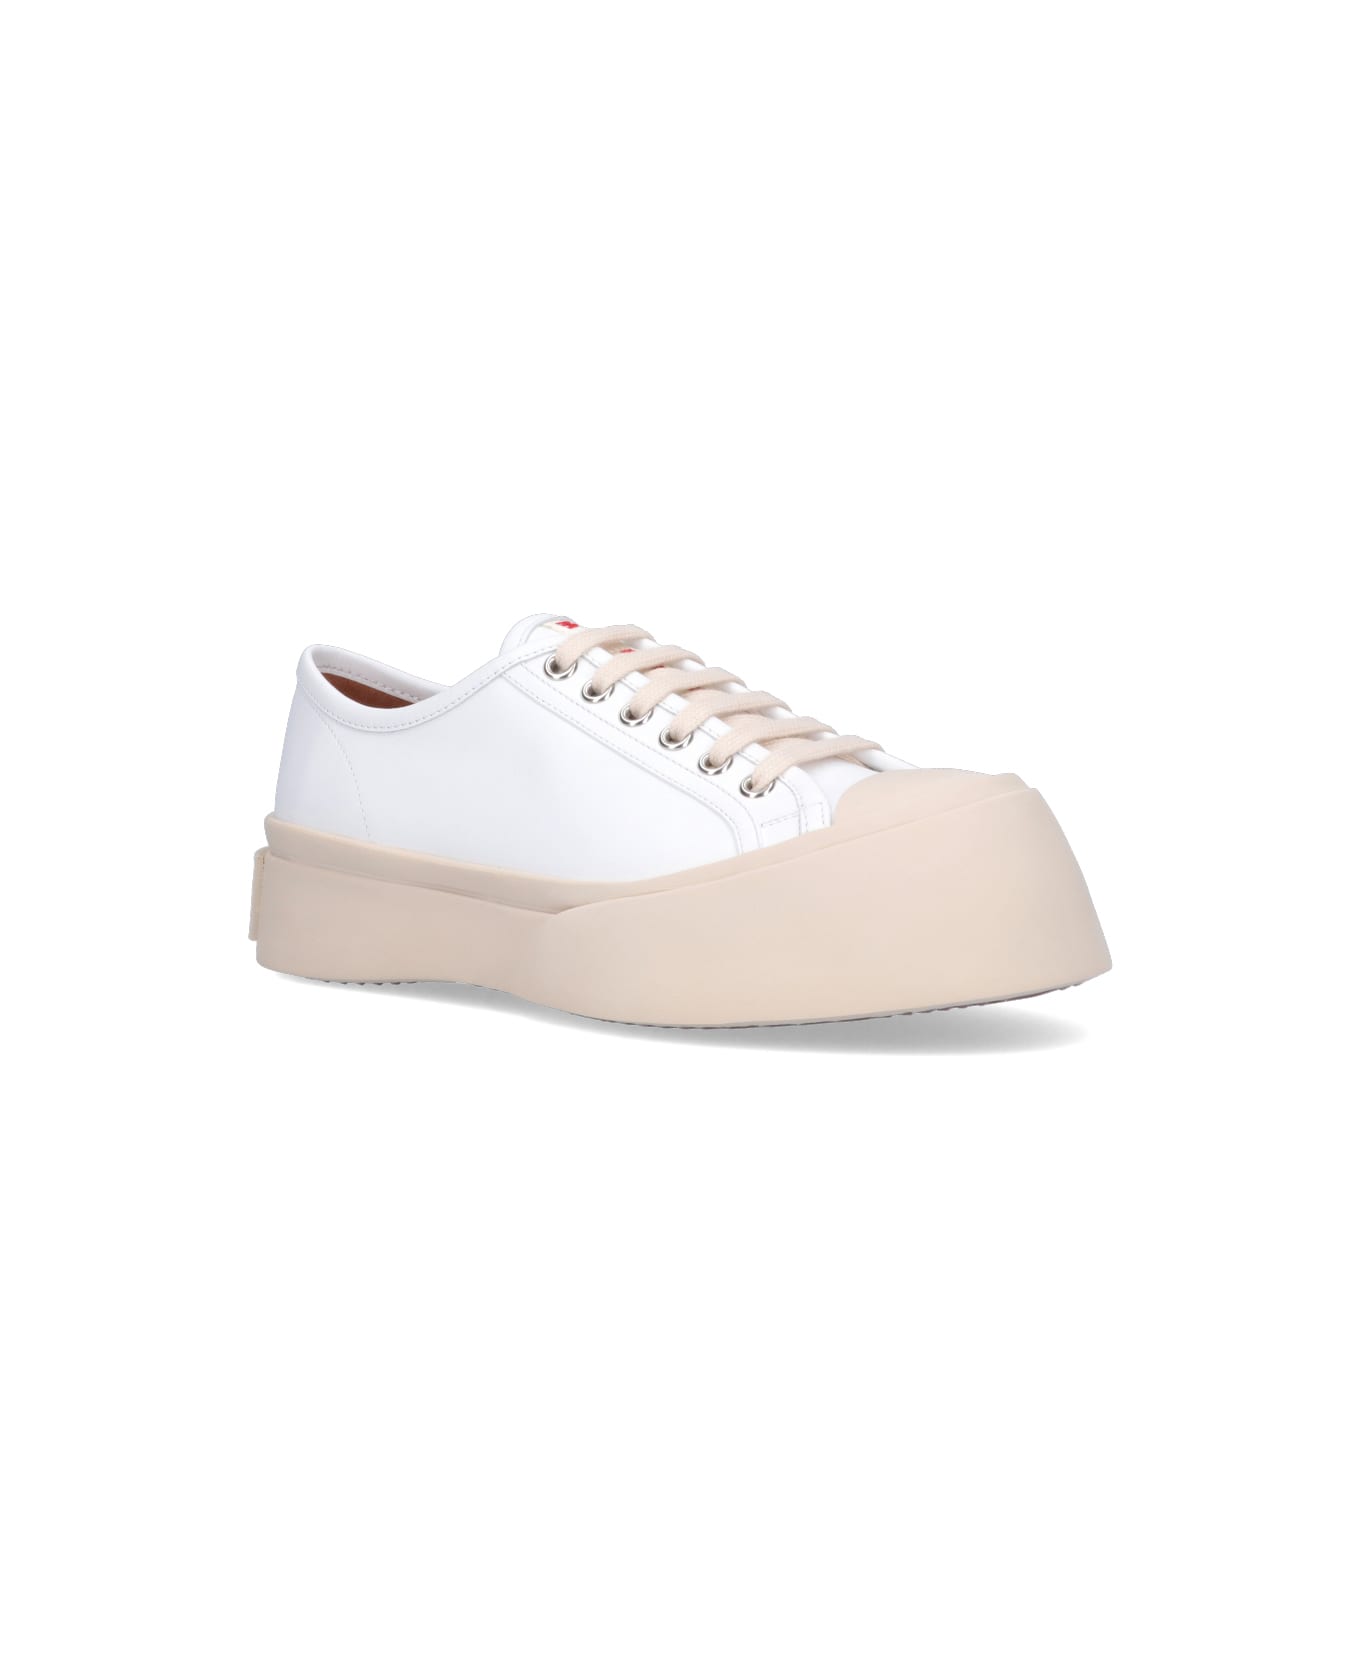 Marni 'pablo' Sneakers - White